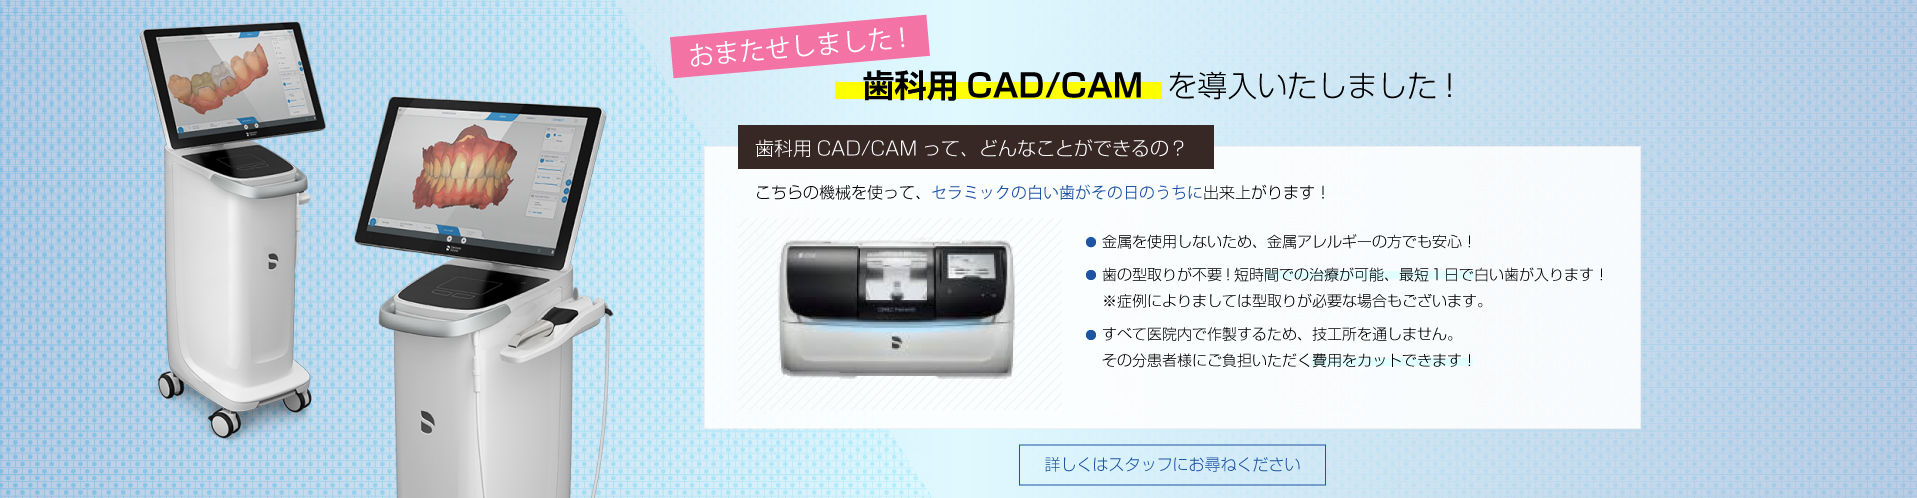 cad/cam